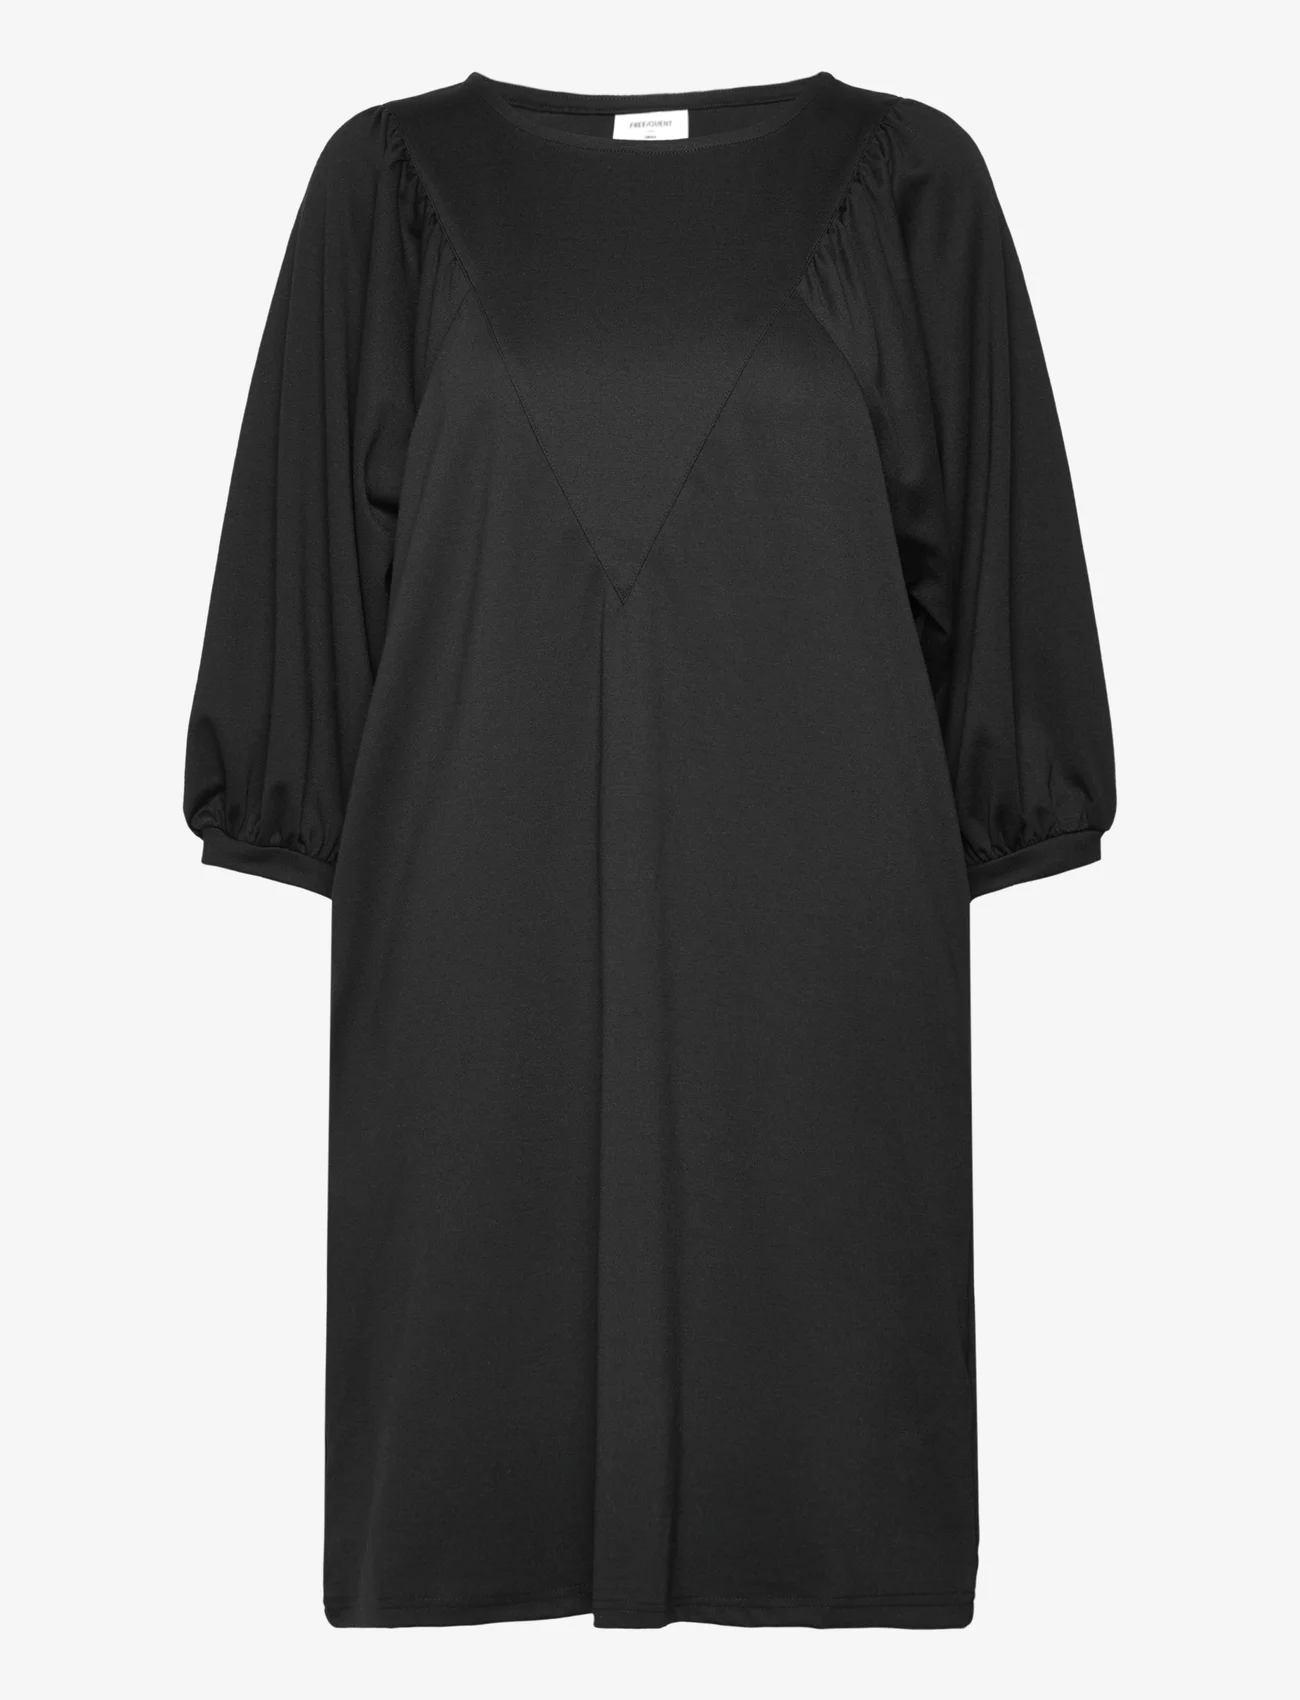 FREE/QUENT - FQNANNI-DRESS - short dresses - black - 0